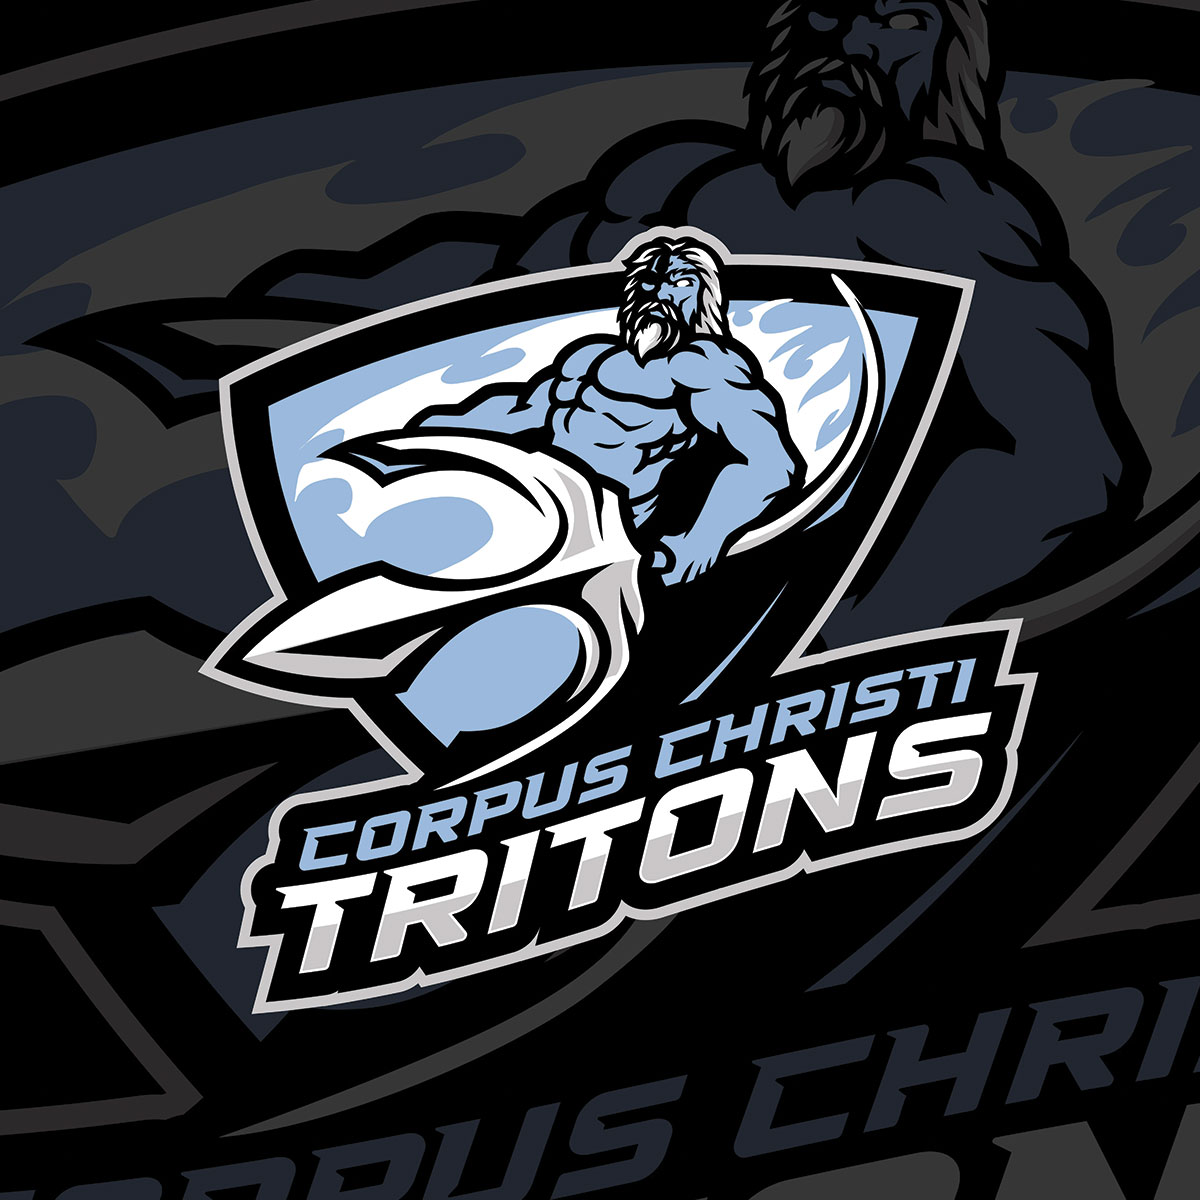 Corpus Christi Tritons vs Oklahoma Tribe (preseason game) 